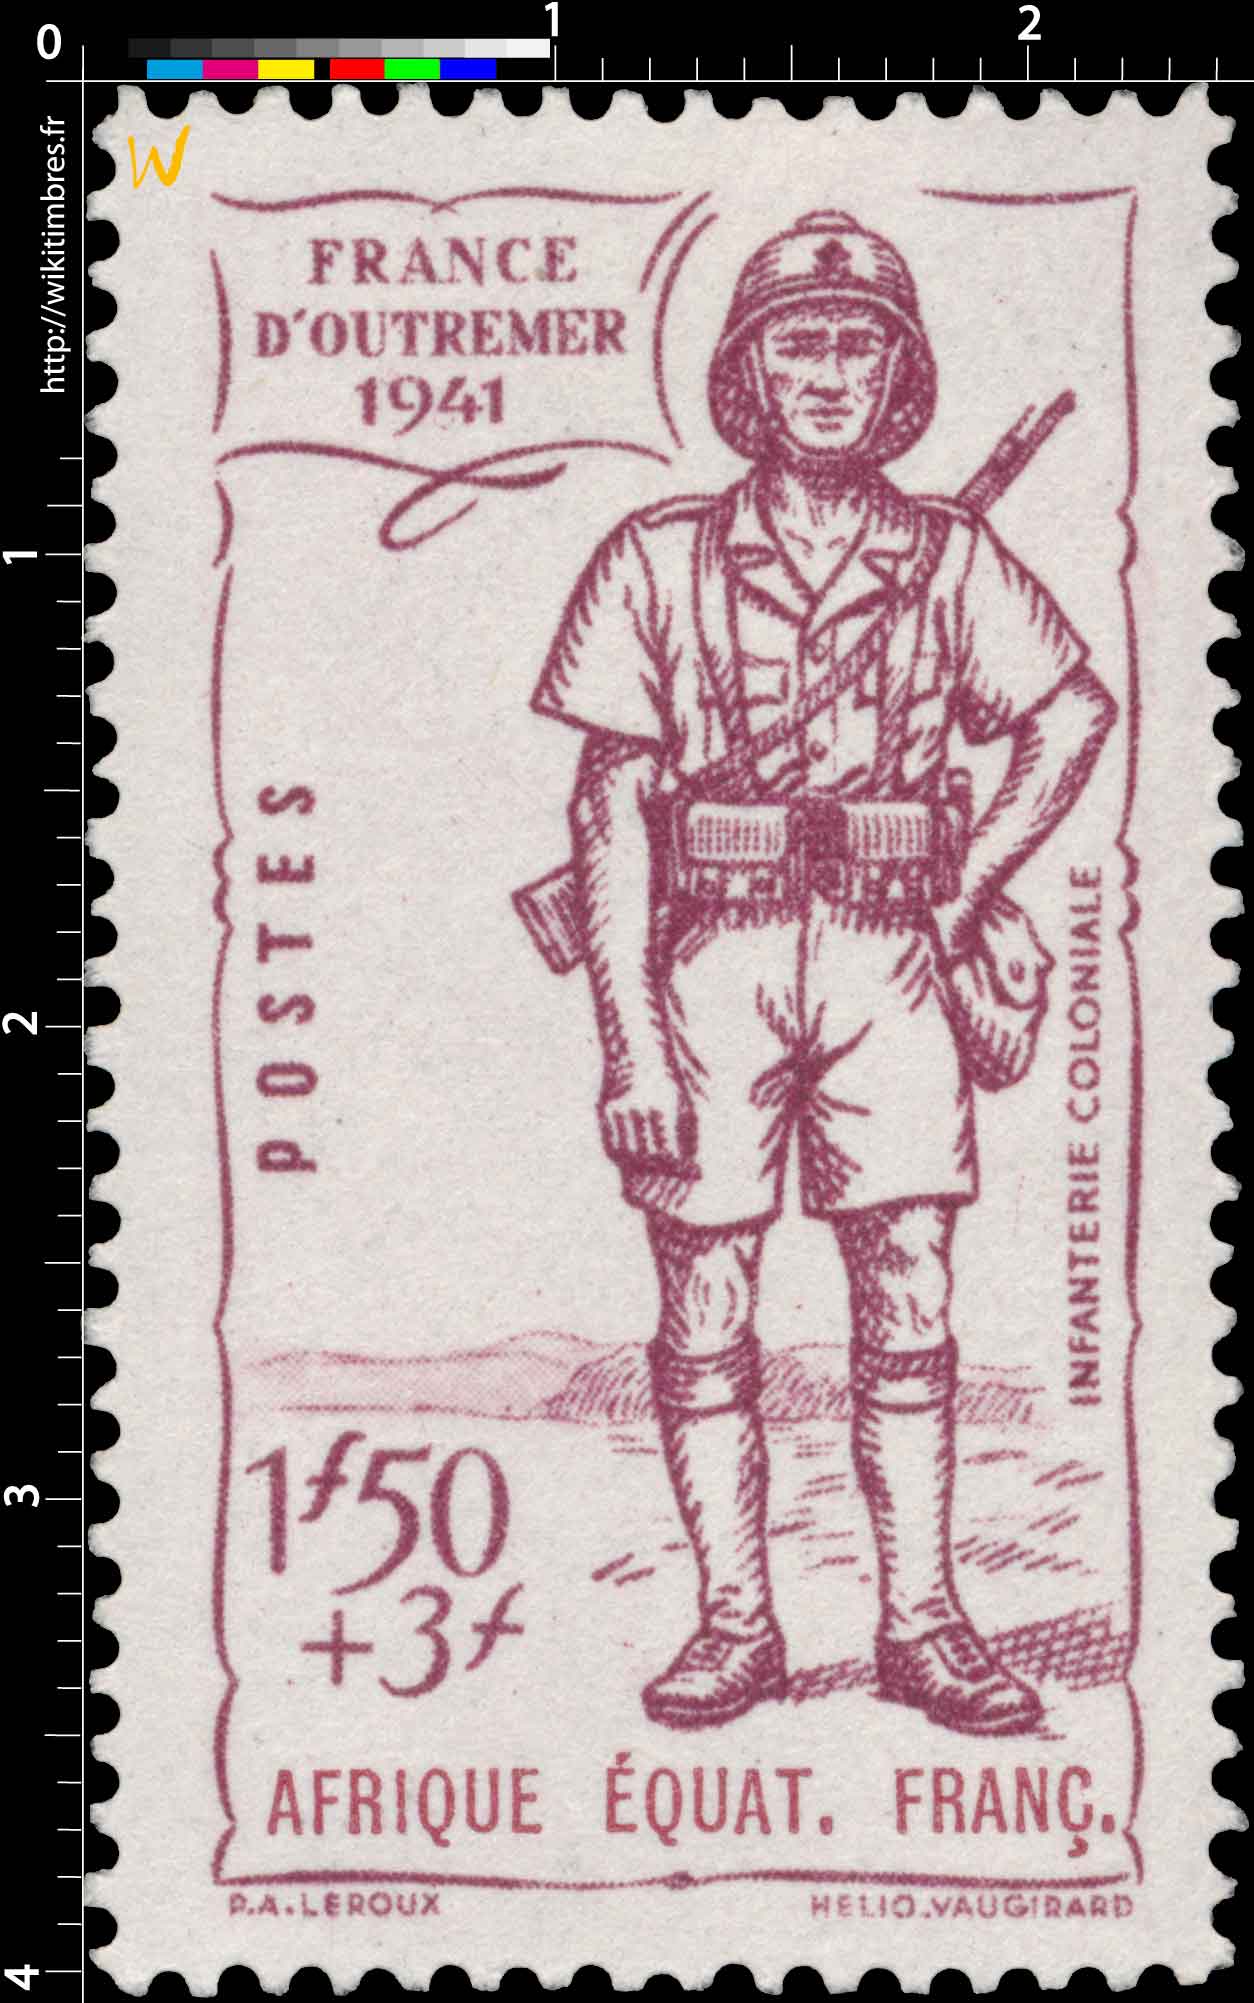 France d'outremer 1941 Afrique Équatoriale Française